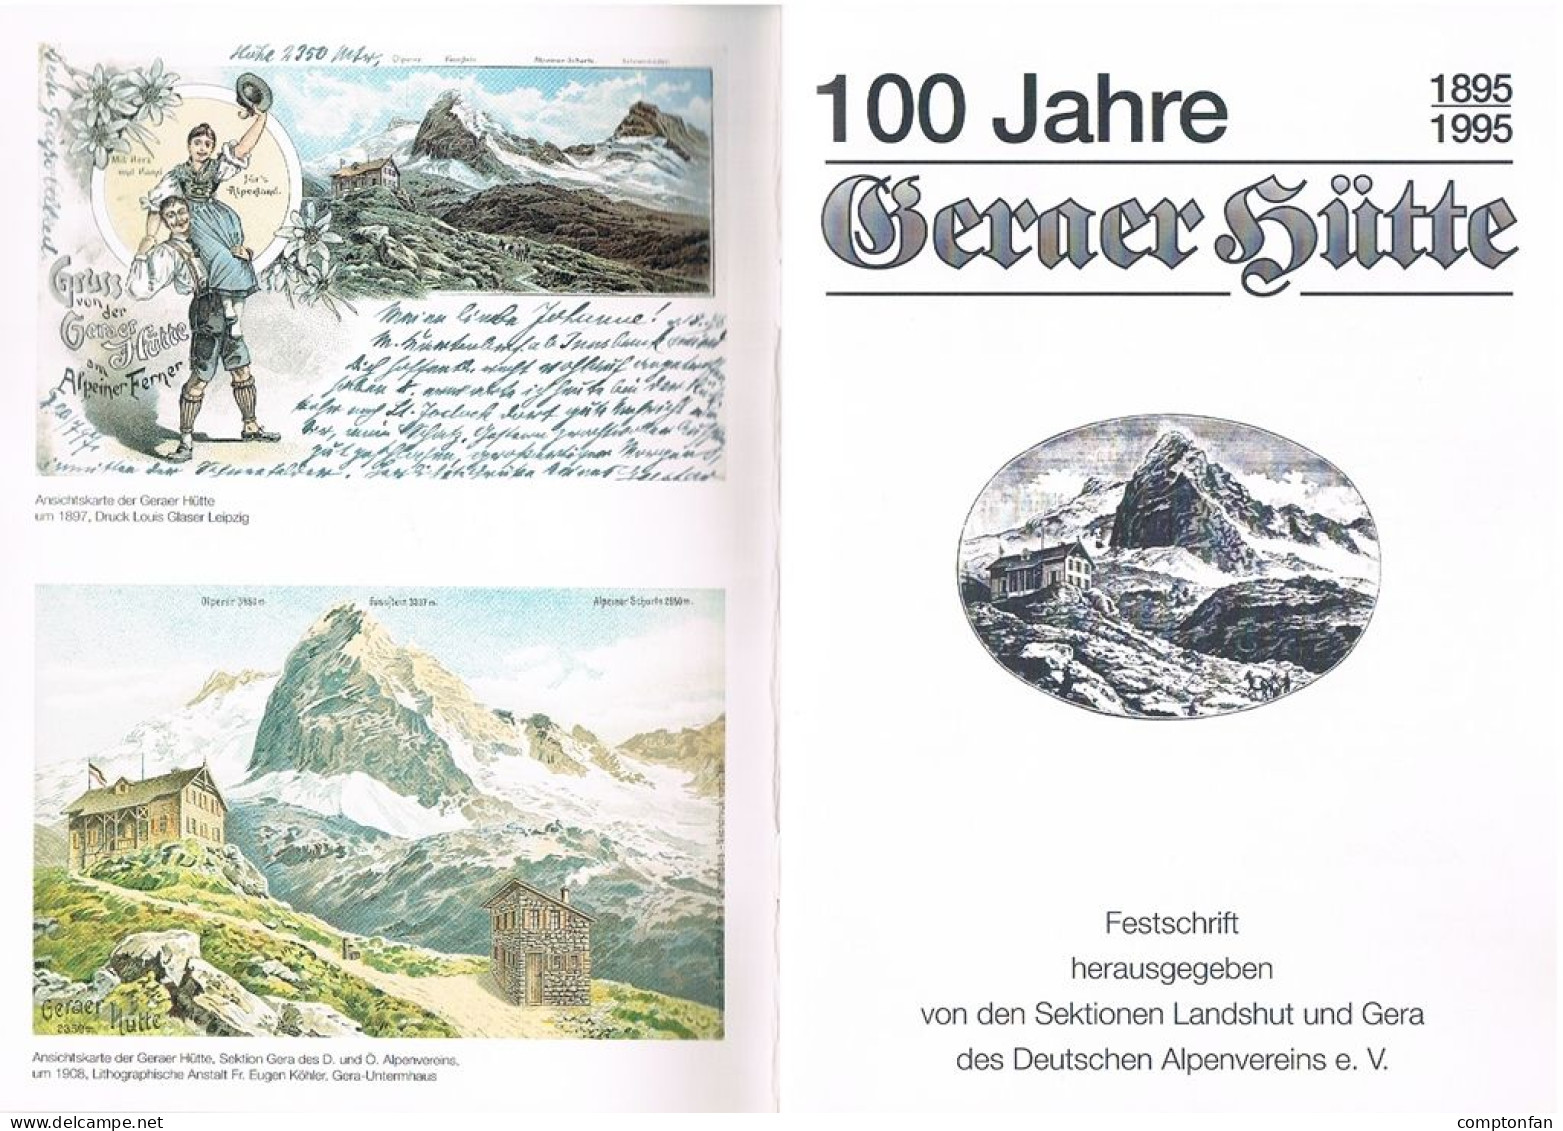 B100 895 Festschrift 100 Jahre Geraer Hütte Deutscher Alpenverein Rarität ! - Livres Anciens